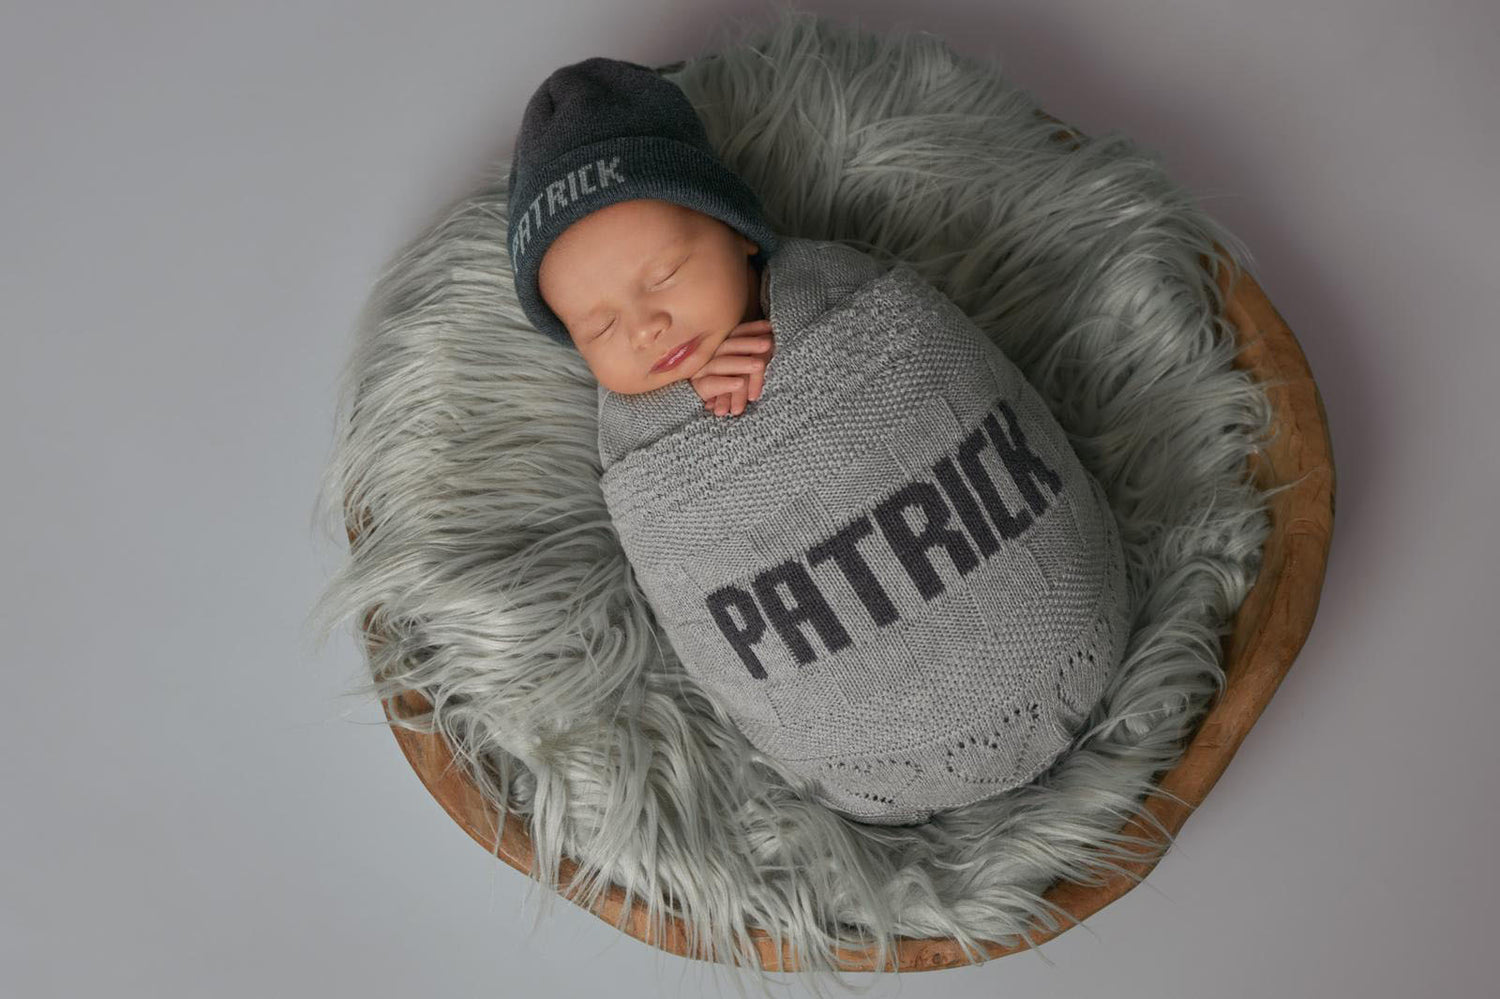 Coperata e berrettino personalizzati come regalo originale per neonato